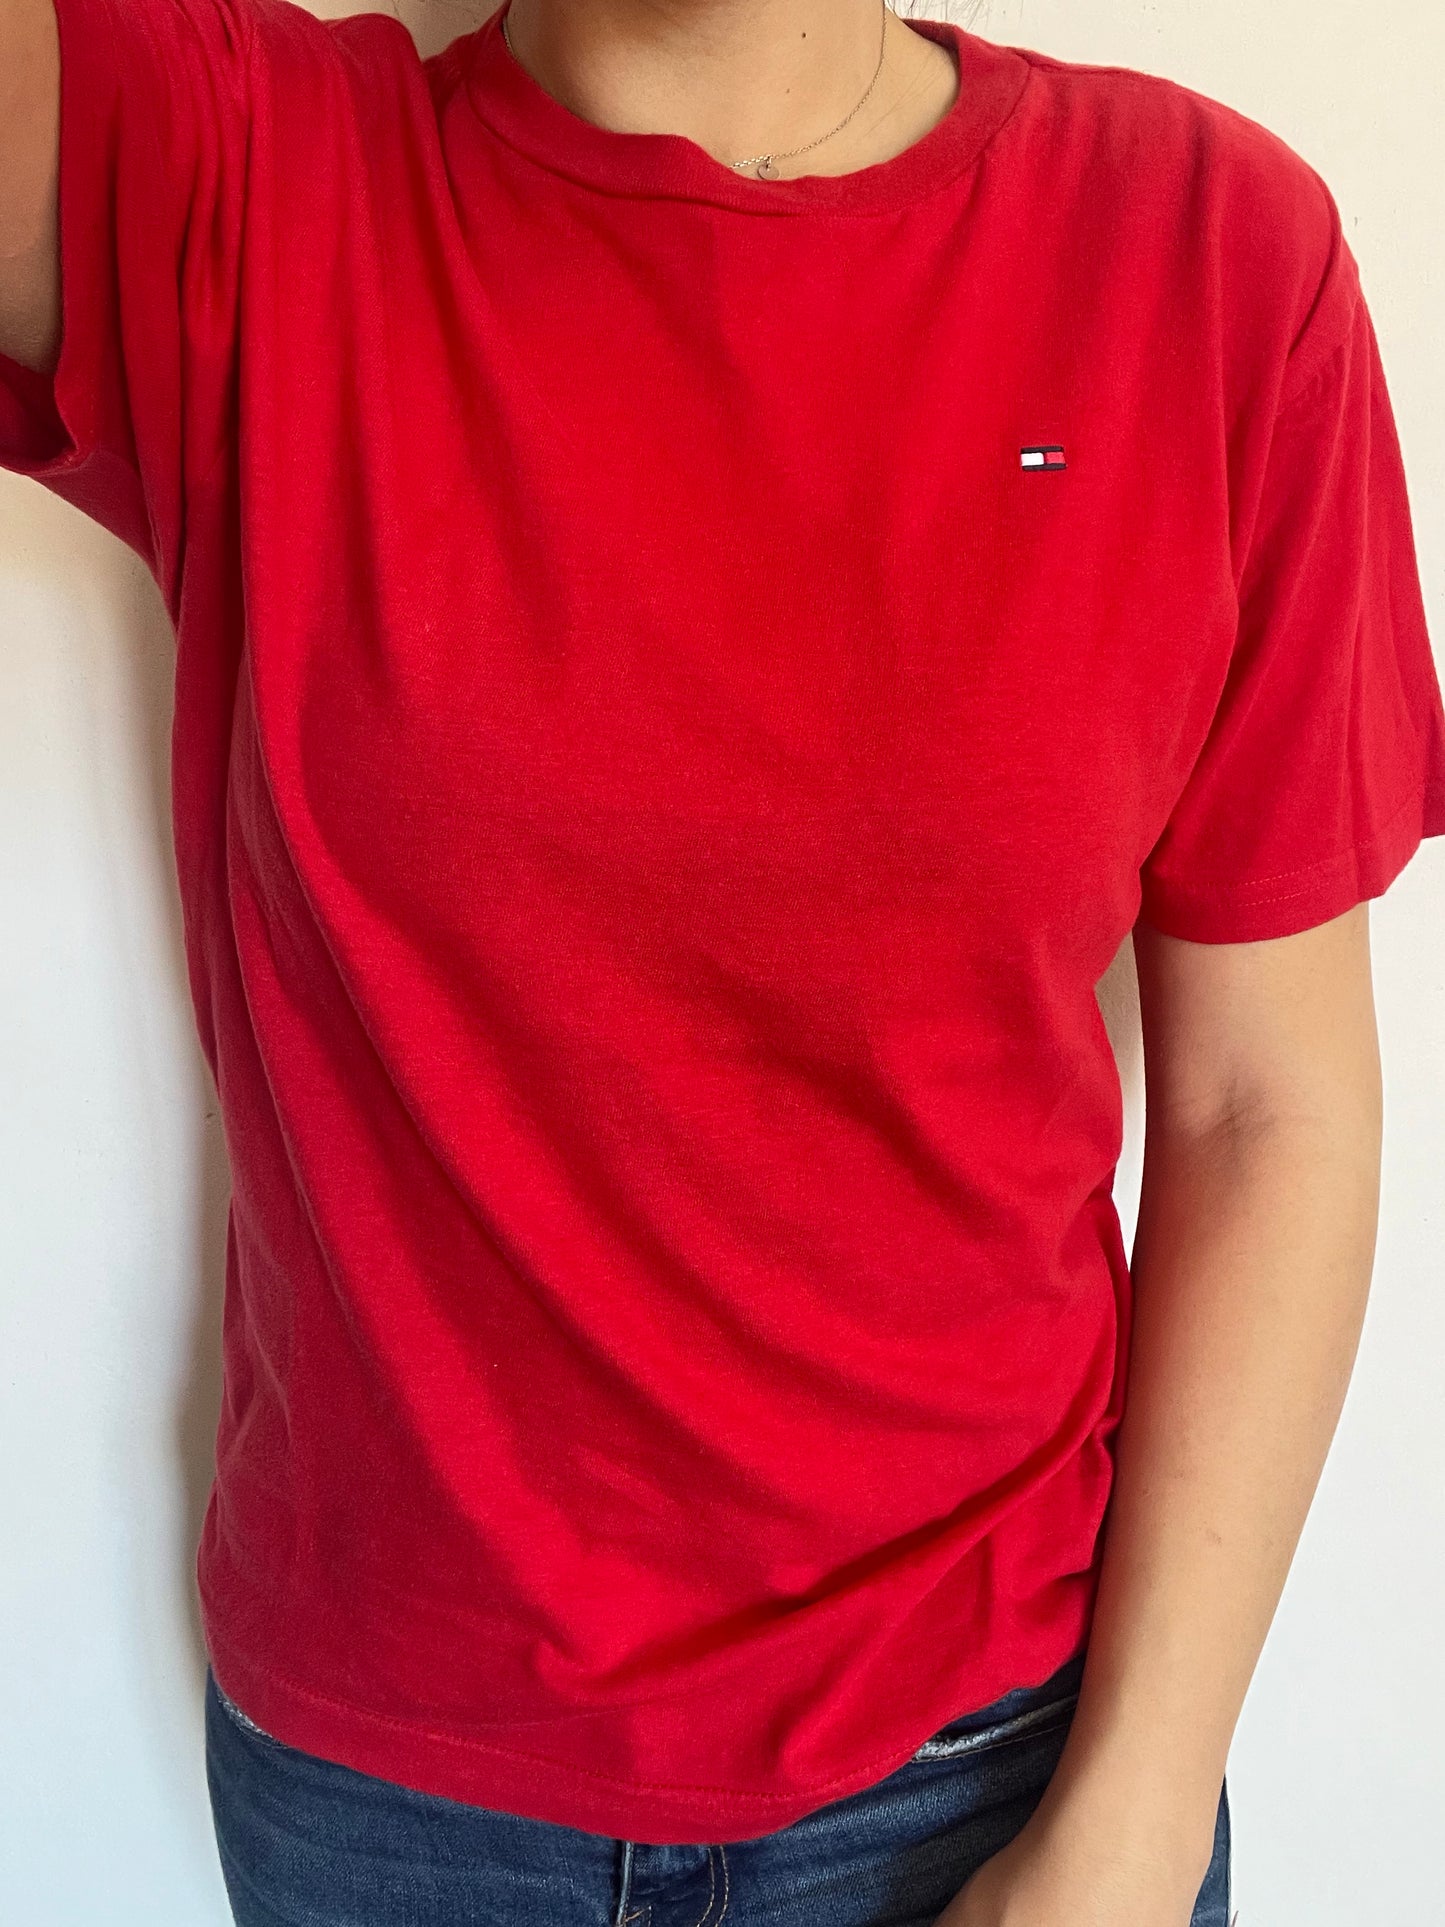 T-Shirt Tommy Hilfiger rossa taglia M